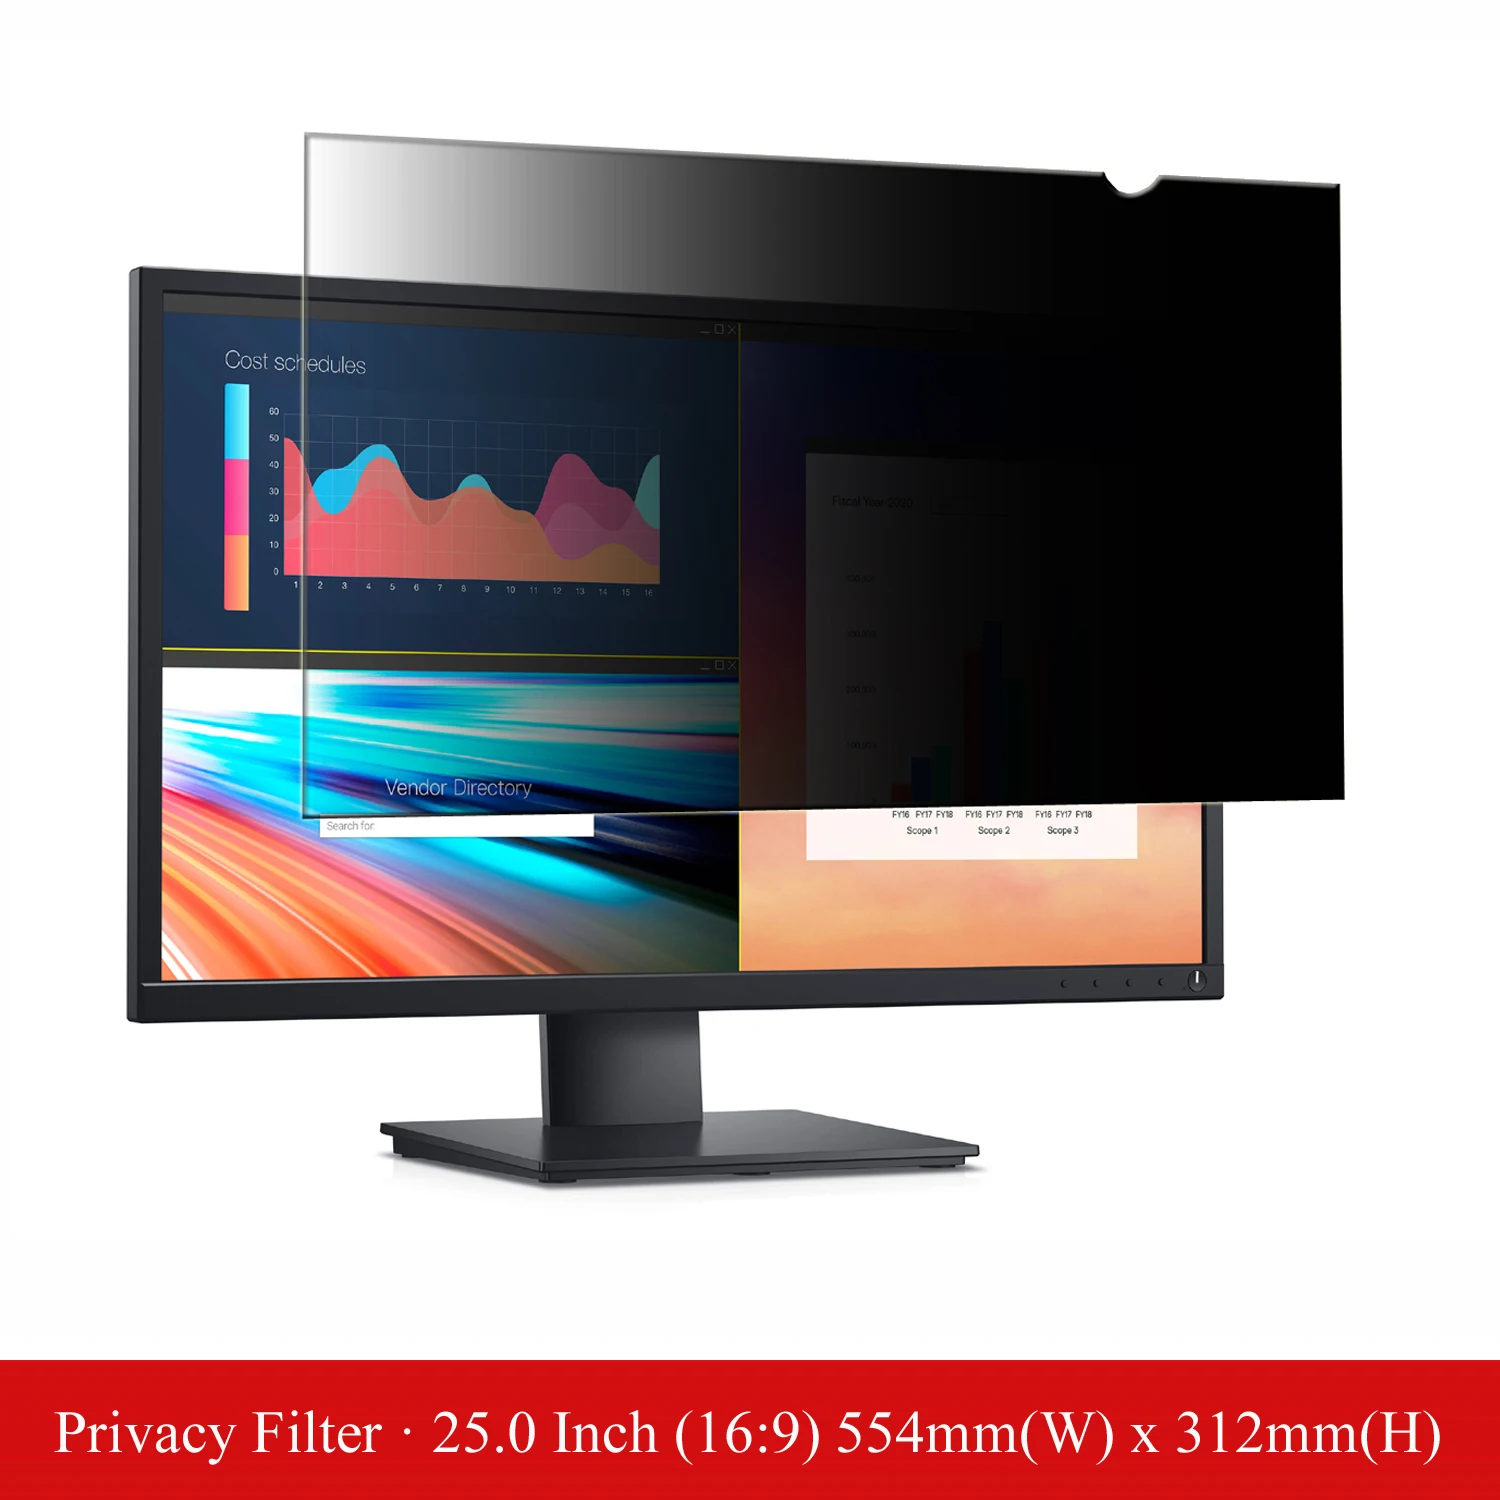 25 inch Anti-Glare Computer Privacy Filter Screen Protector Film for Desktop Monitor Widescreen 16:9 Aspect Ratio